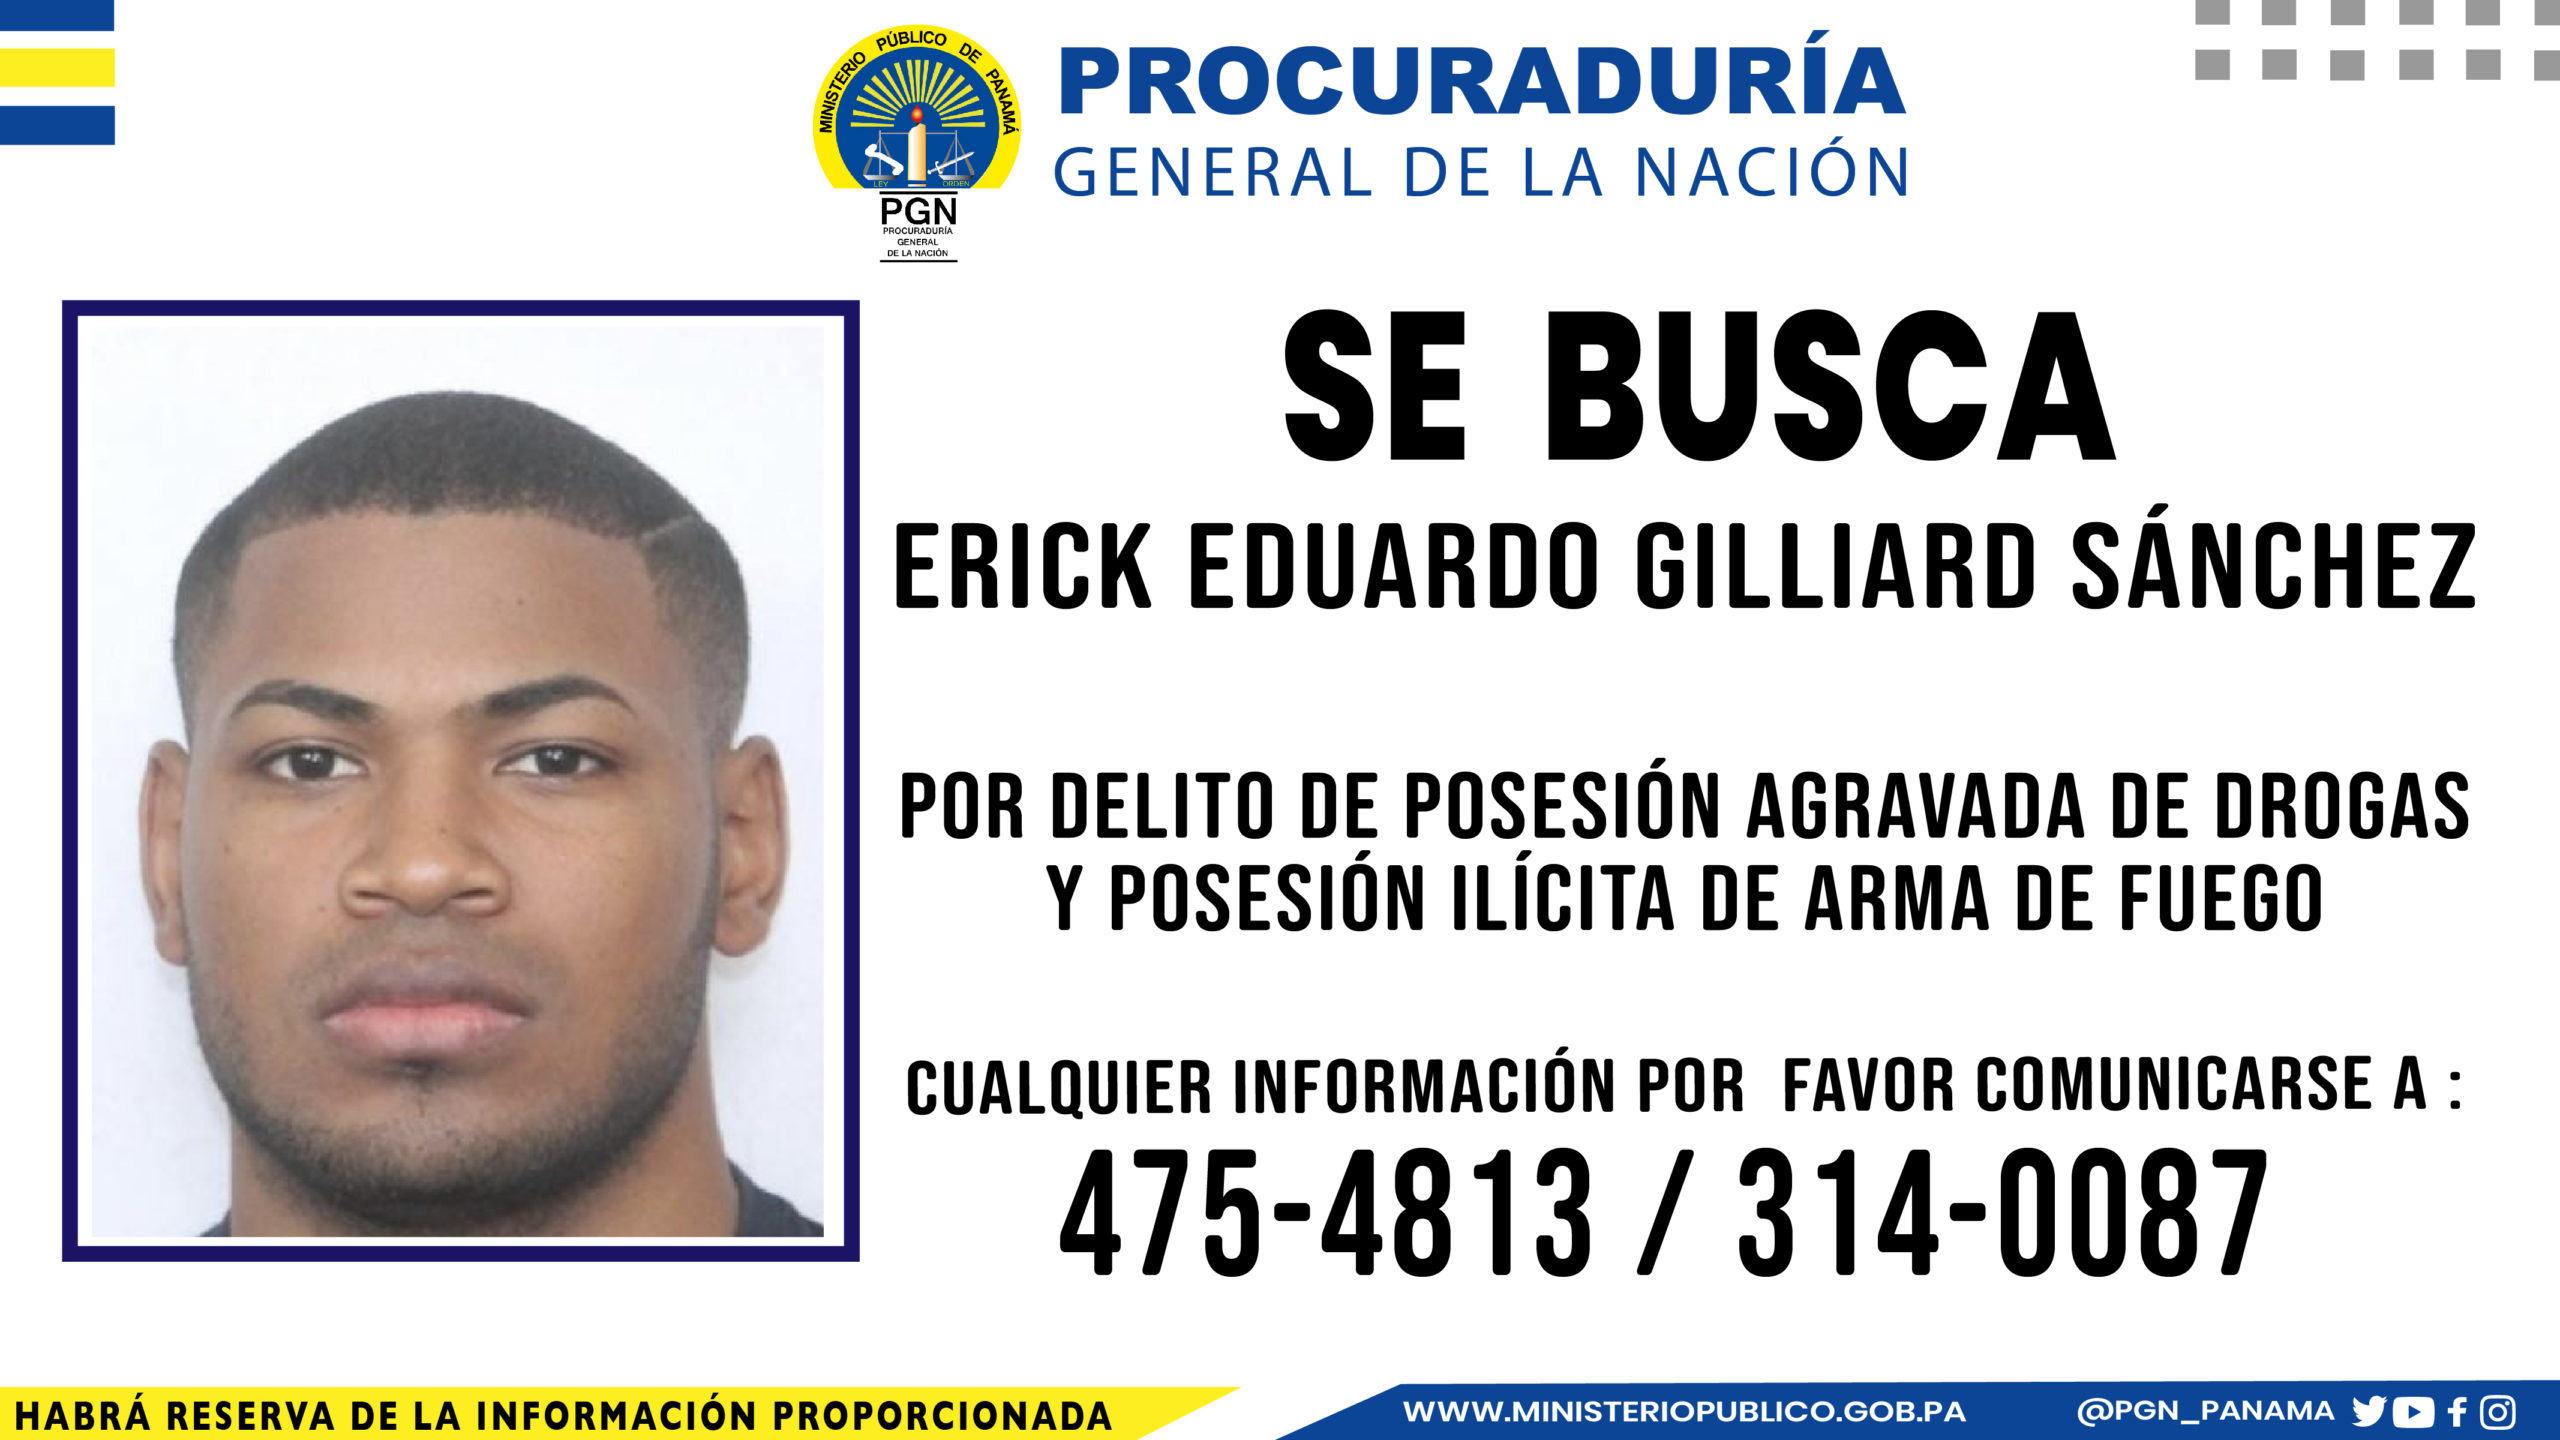 Ministerio Público solicita colaboración para ubicar a Erick Eduardo Gilliard Sánchez por delitos relacionados con drogas